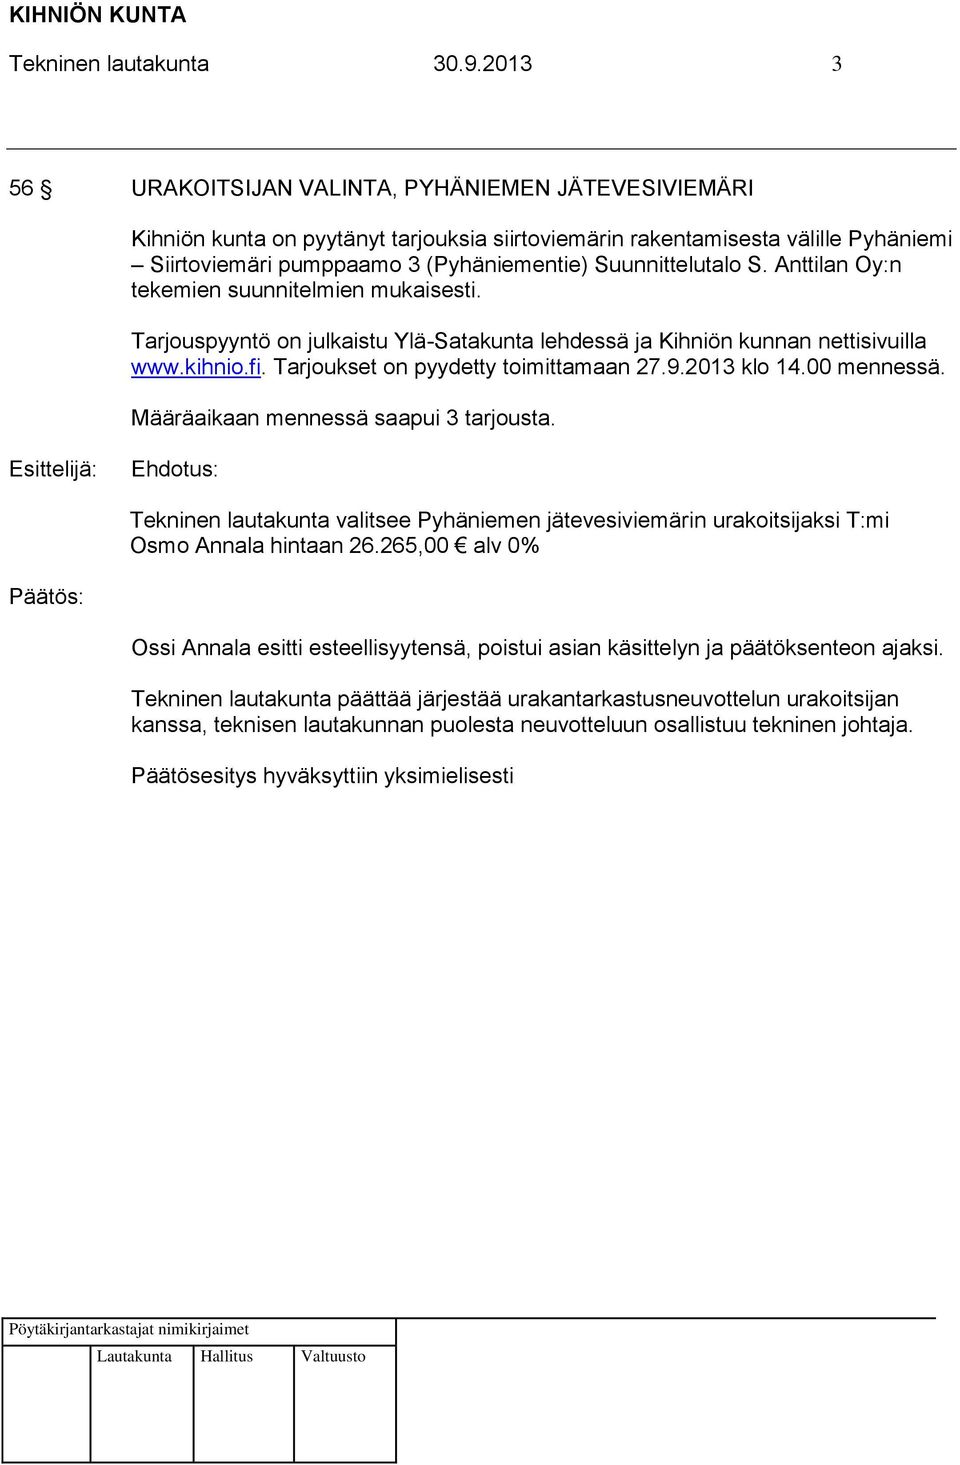 Suunnittelutalo S. Anttilan Oy:n tekemien suunnitelmien mukaisesti. Tarjouspyyntö on julkaistu Ylä-Satakunta lehdessä ja Kihniön kunnan nettisivuilla www.kihnio.fi.